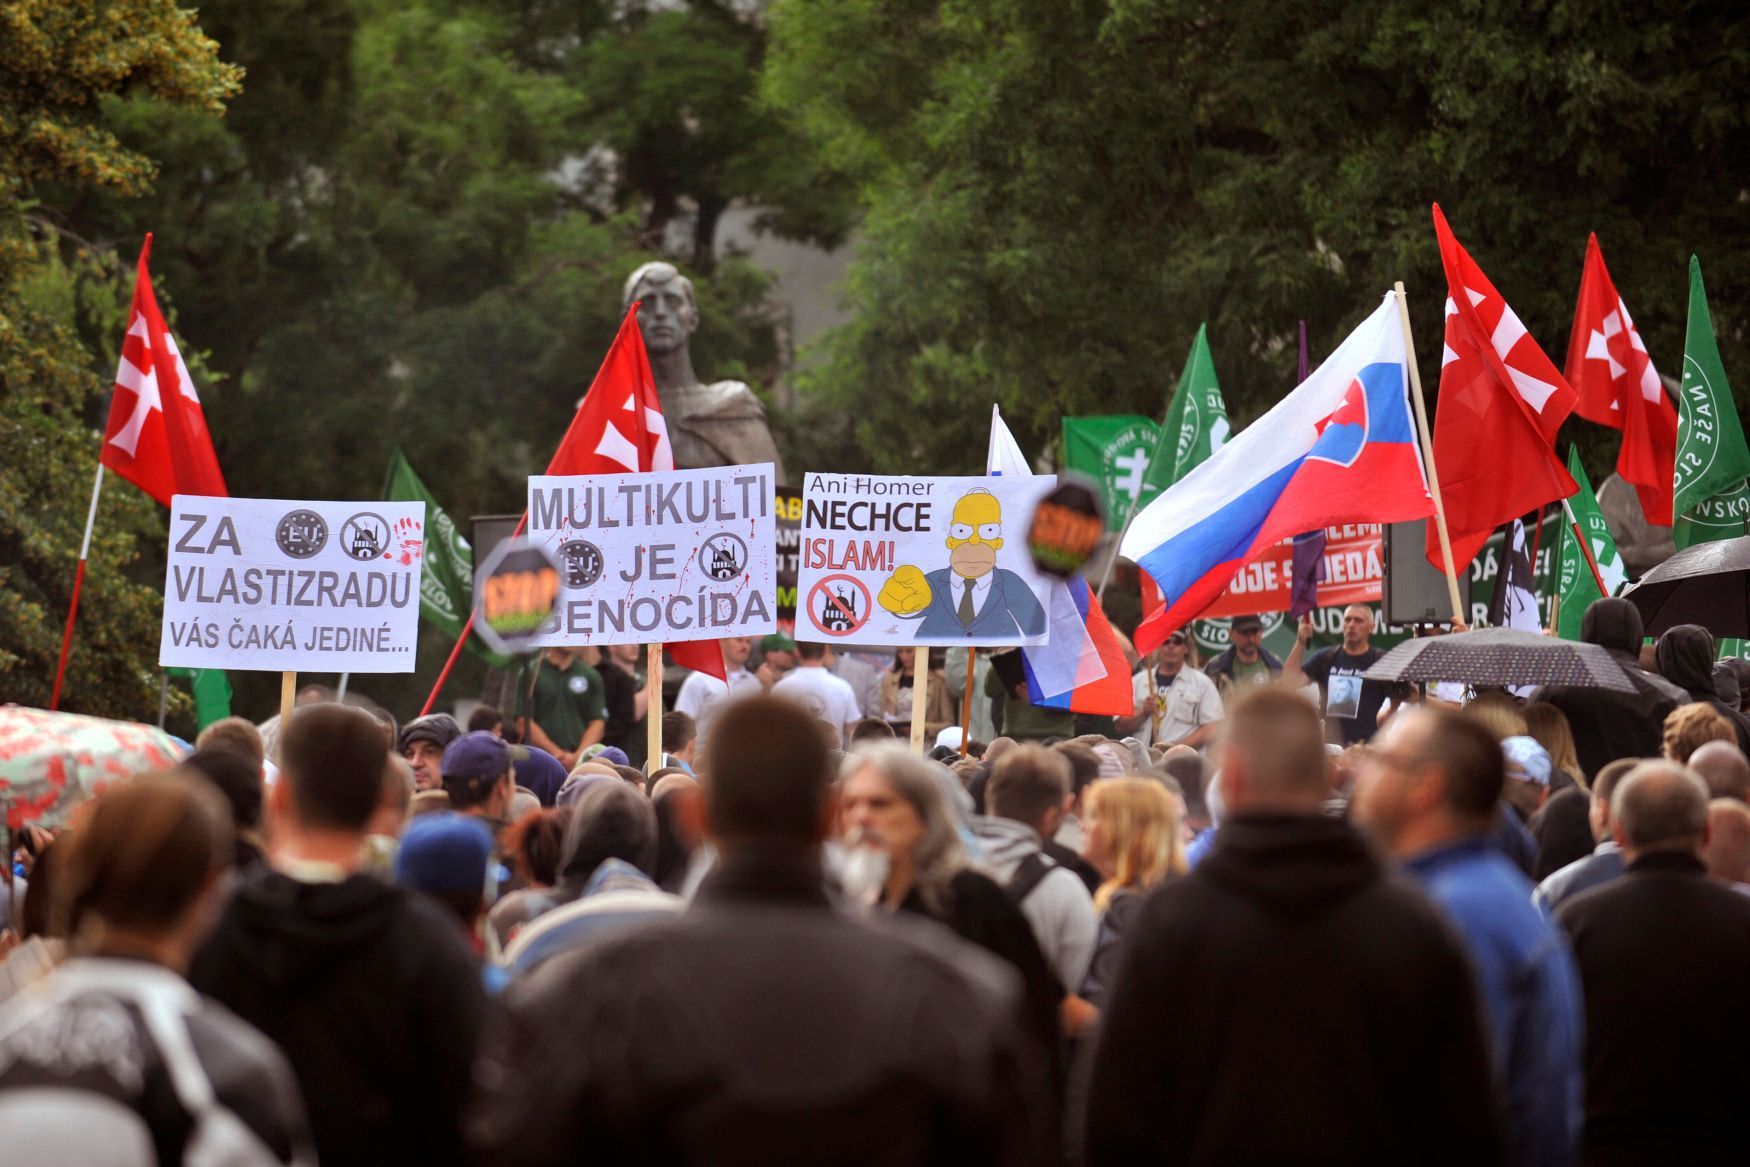 Slovensko - demonstrace proti uprchlíkům